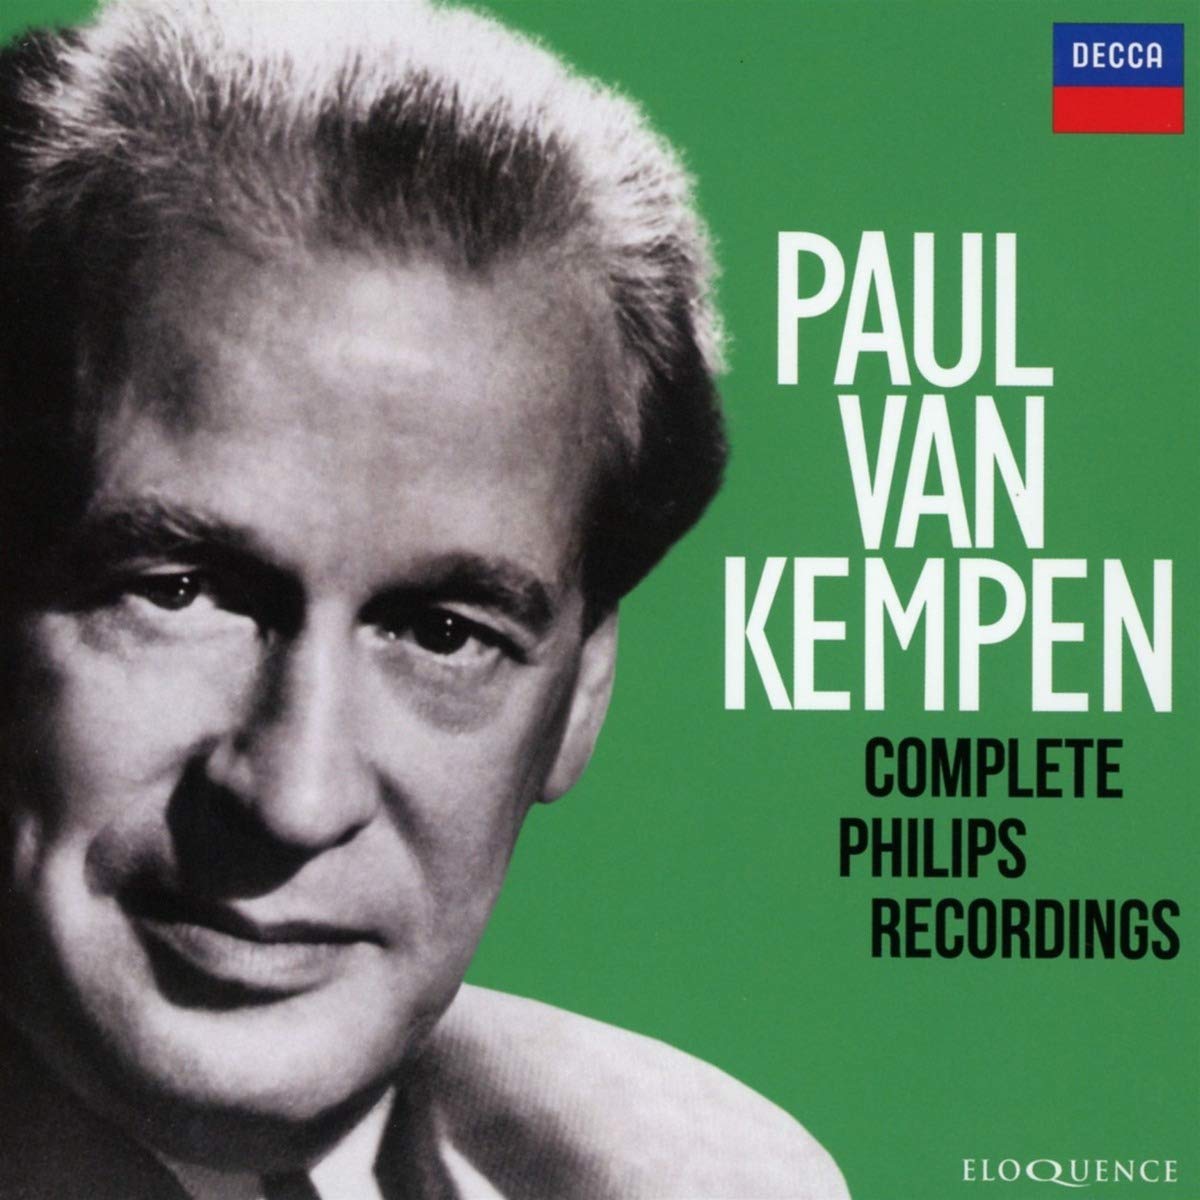 PAUL VAN KEMPEN: COMPLETE PHILIPS RECORDINGS (10 CDS)